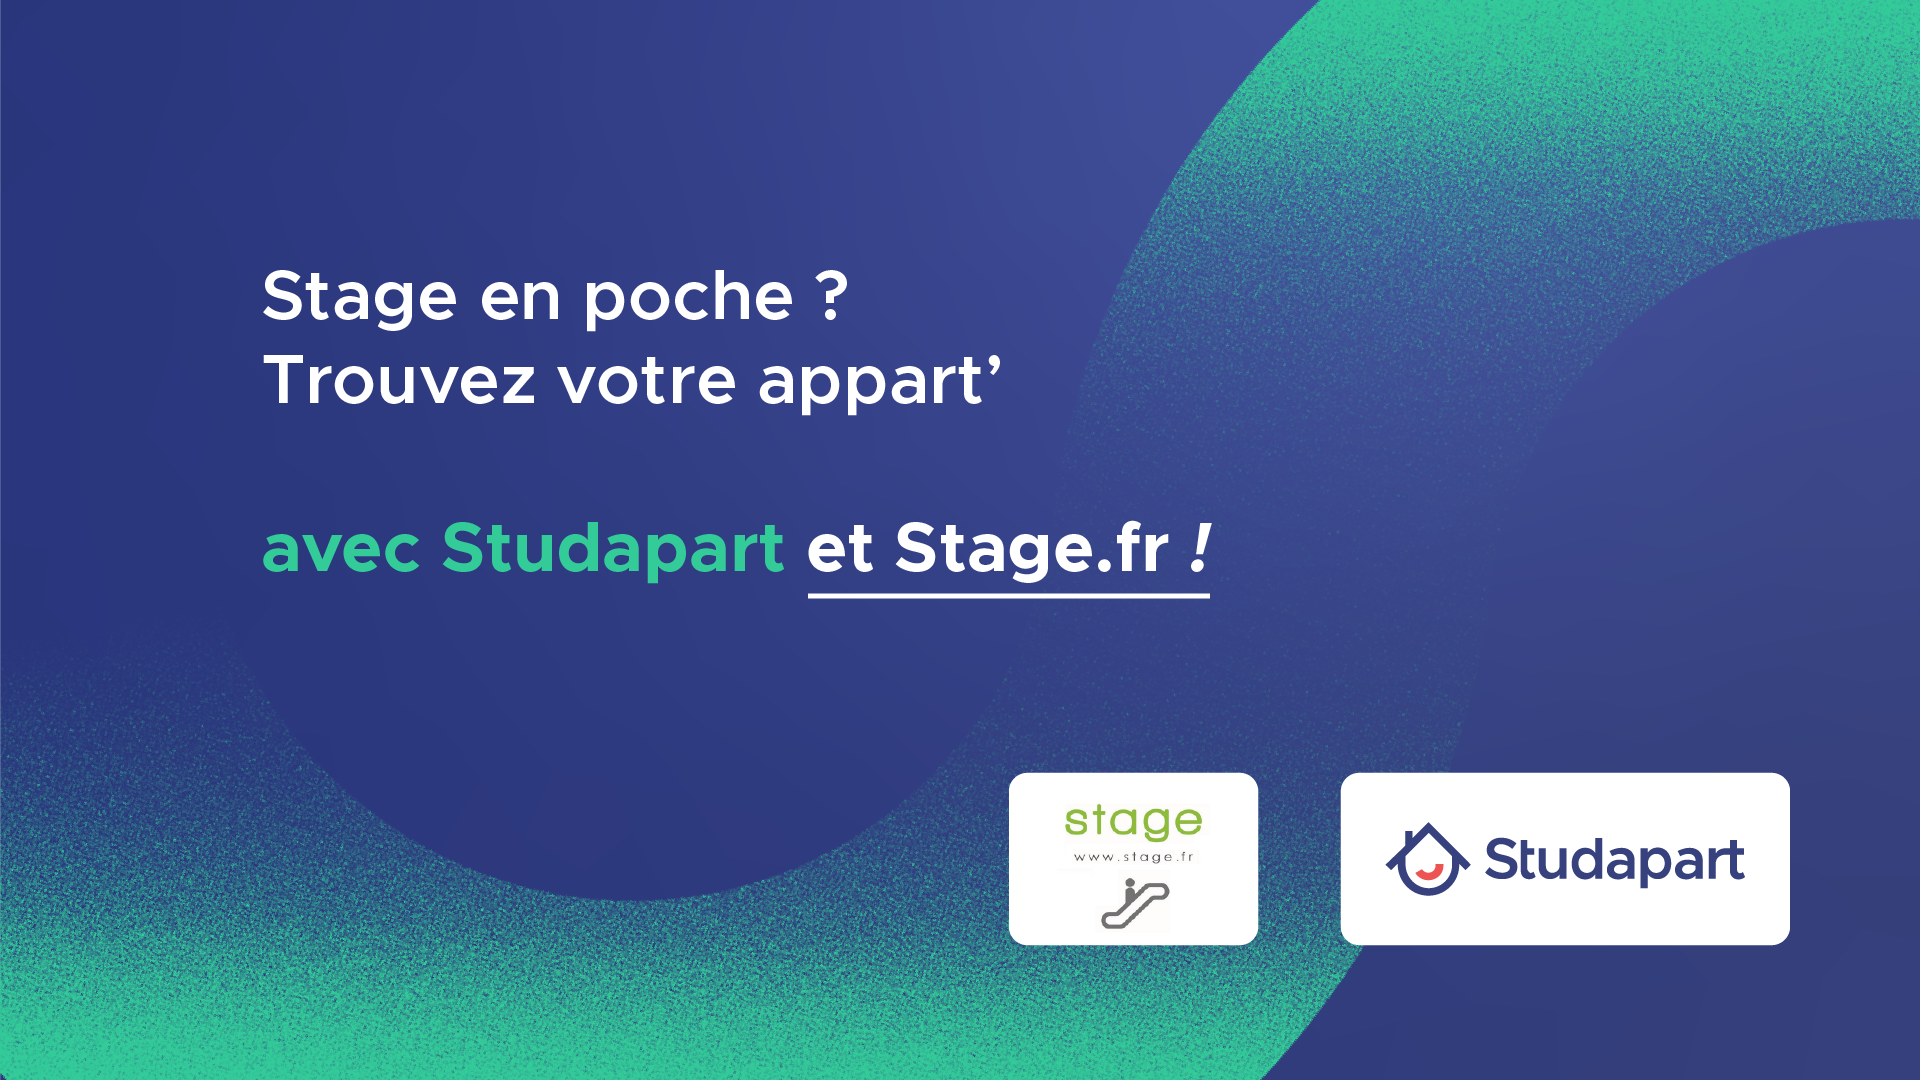 stagefr_studapart